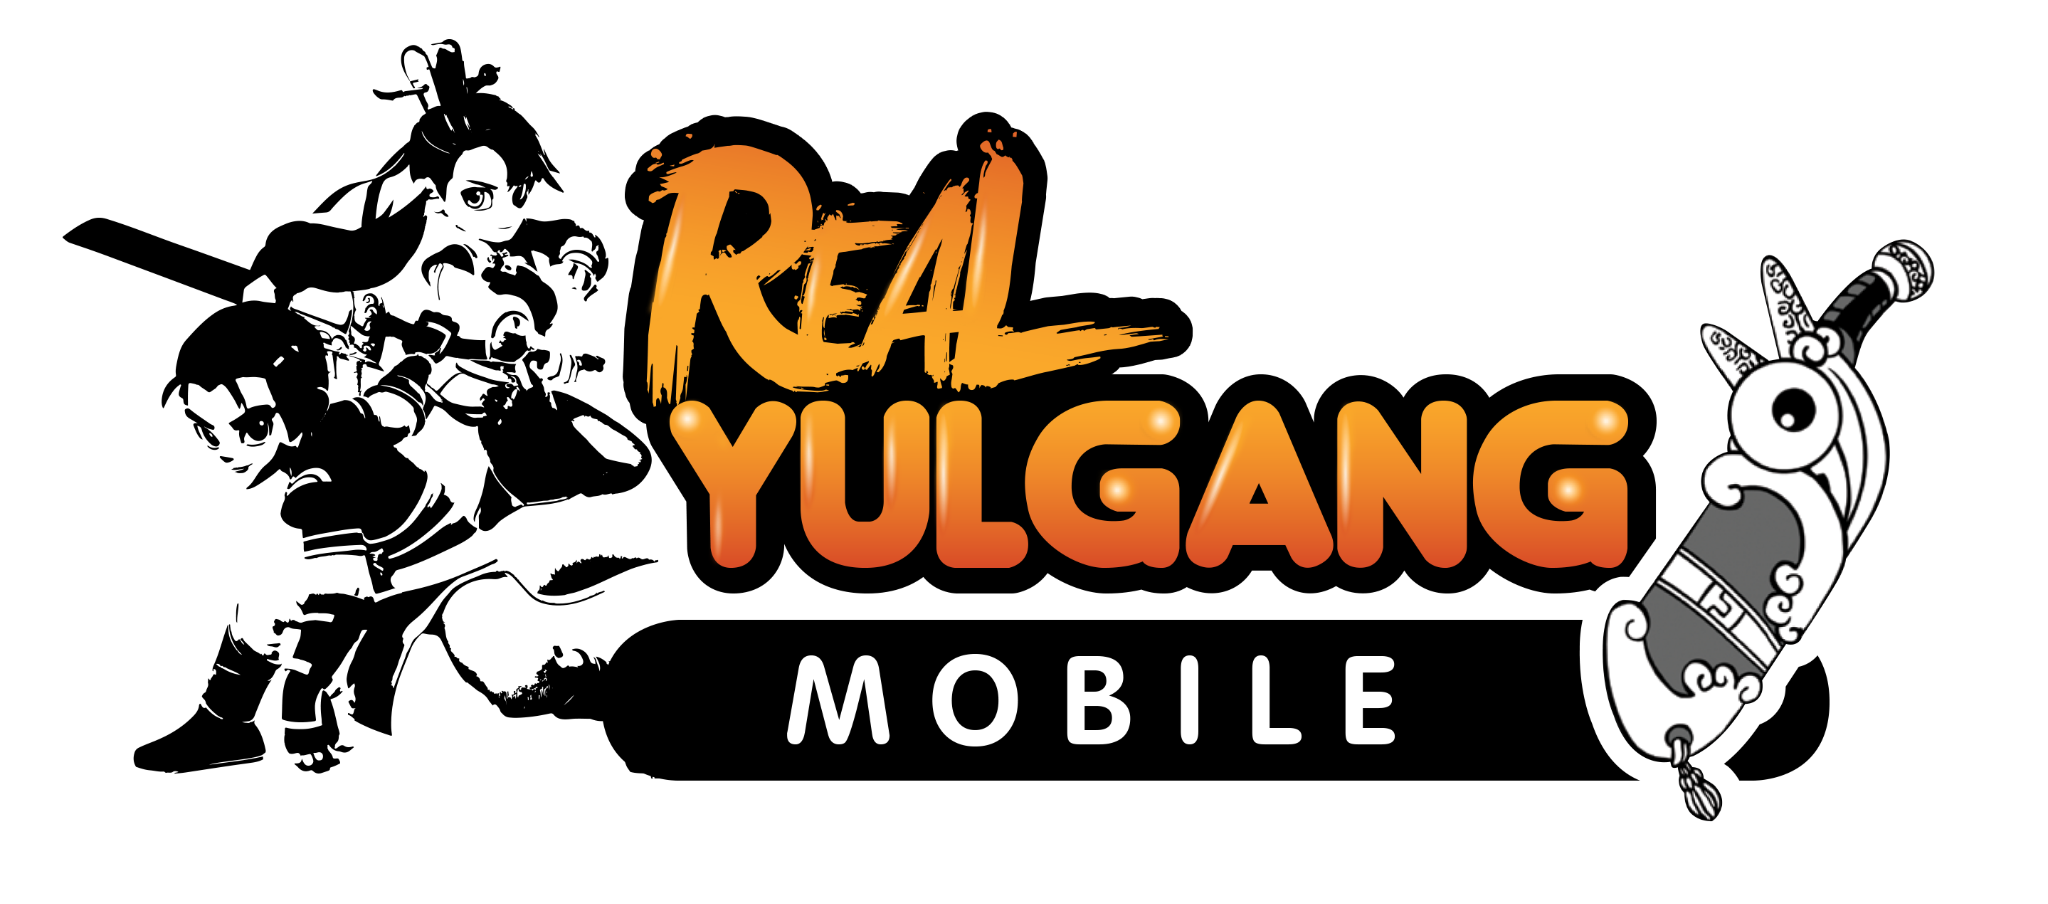 Real Yulgang Mobile 2962021 2